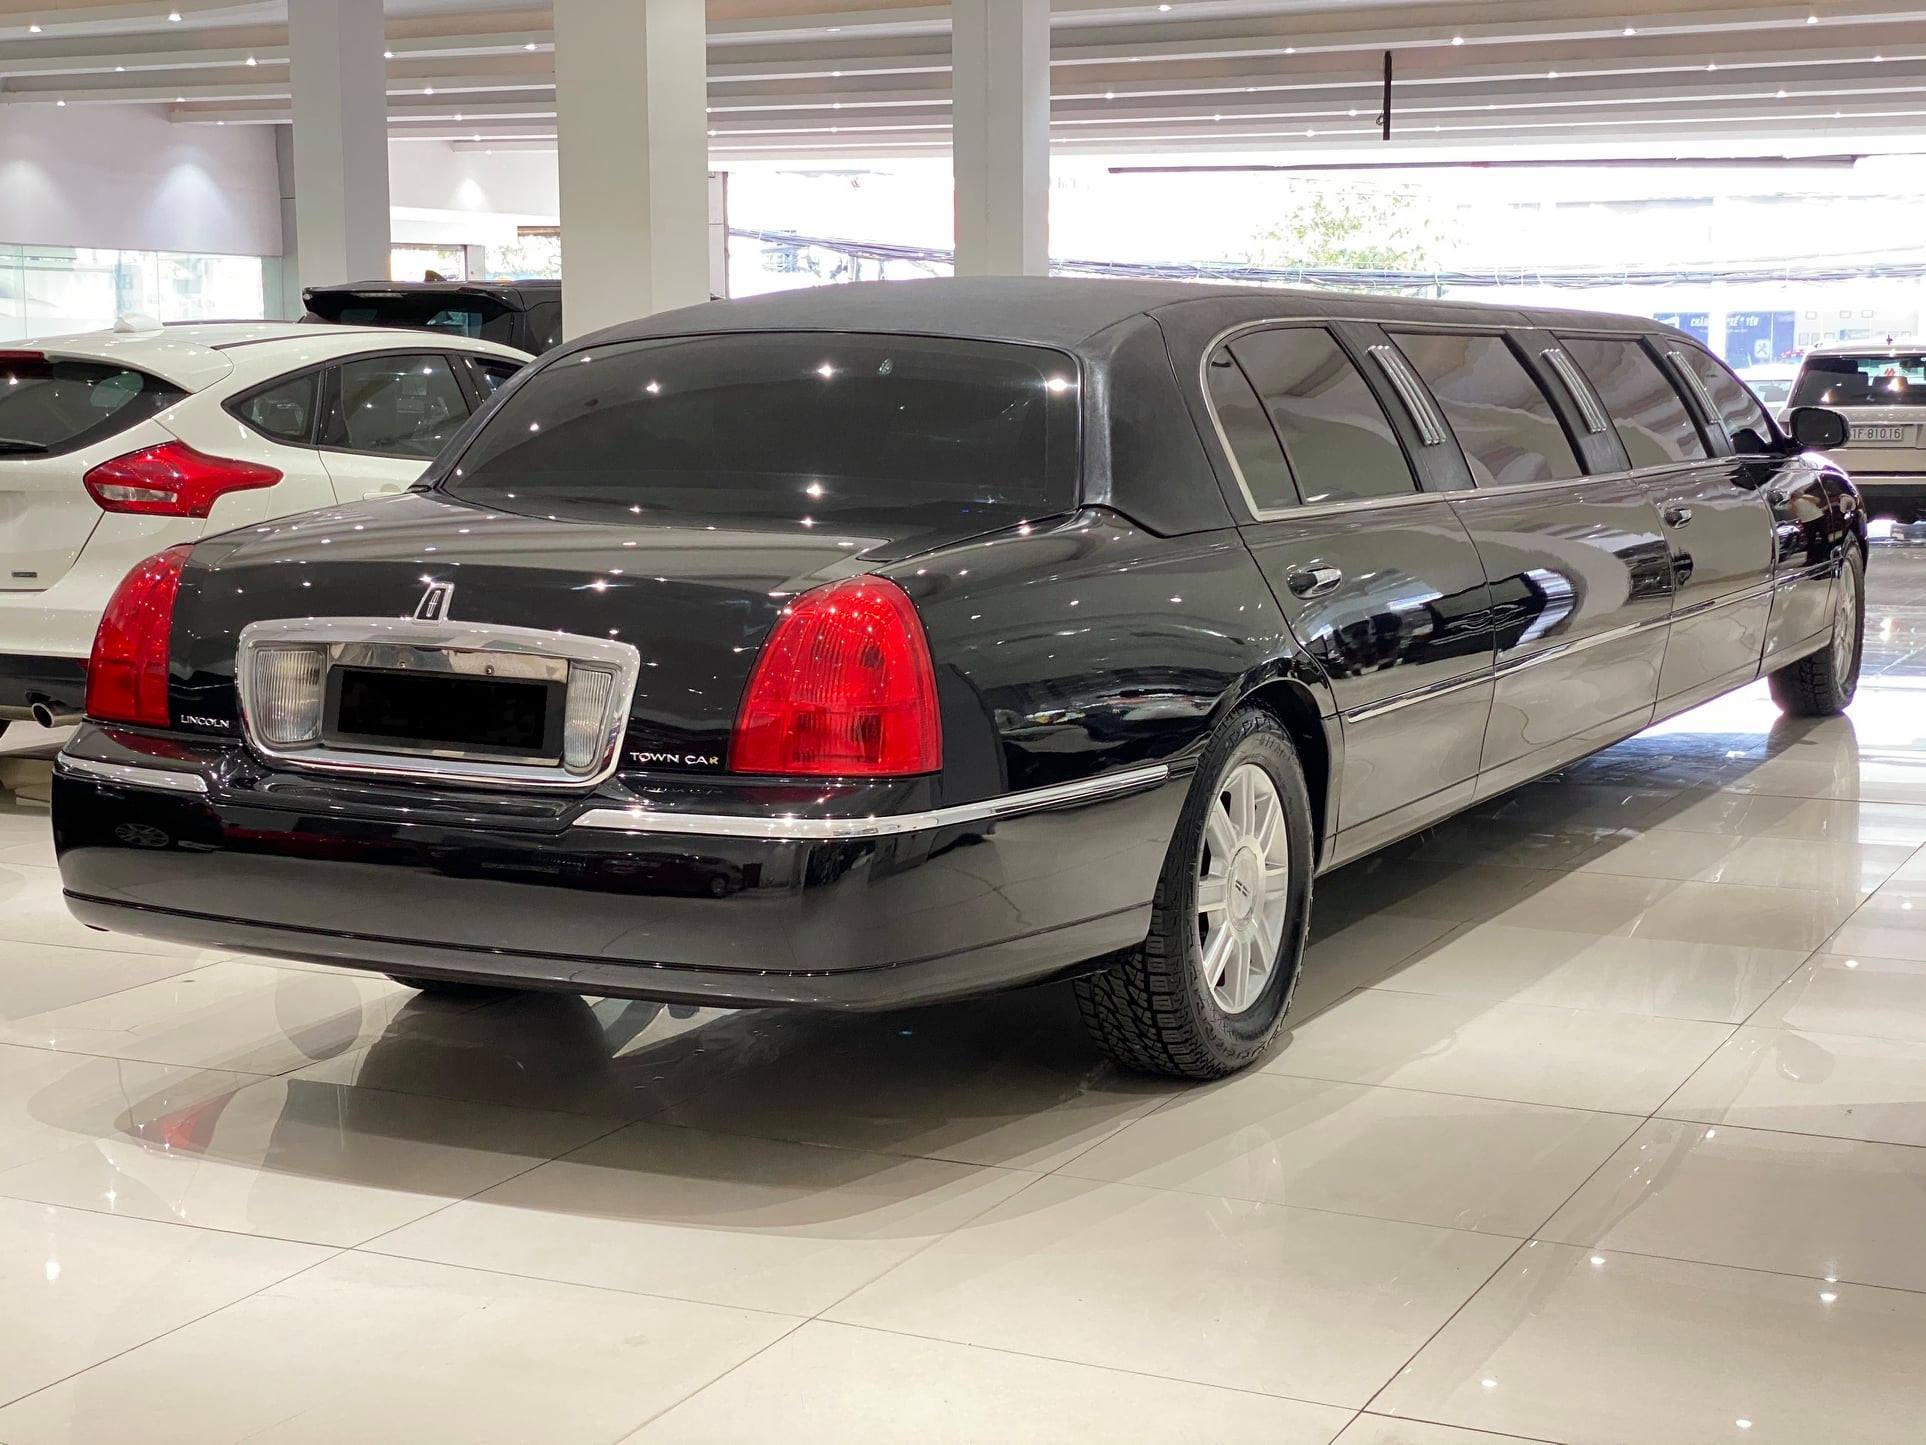 Giữ mới cả thập kỷ, chủ nhân hàng hiếm limousine bán xe với giá chỉ 2,6 tỷ đồng - Ảnh 2.